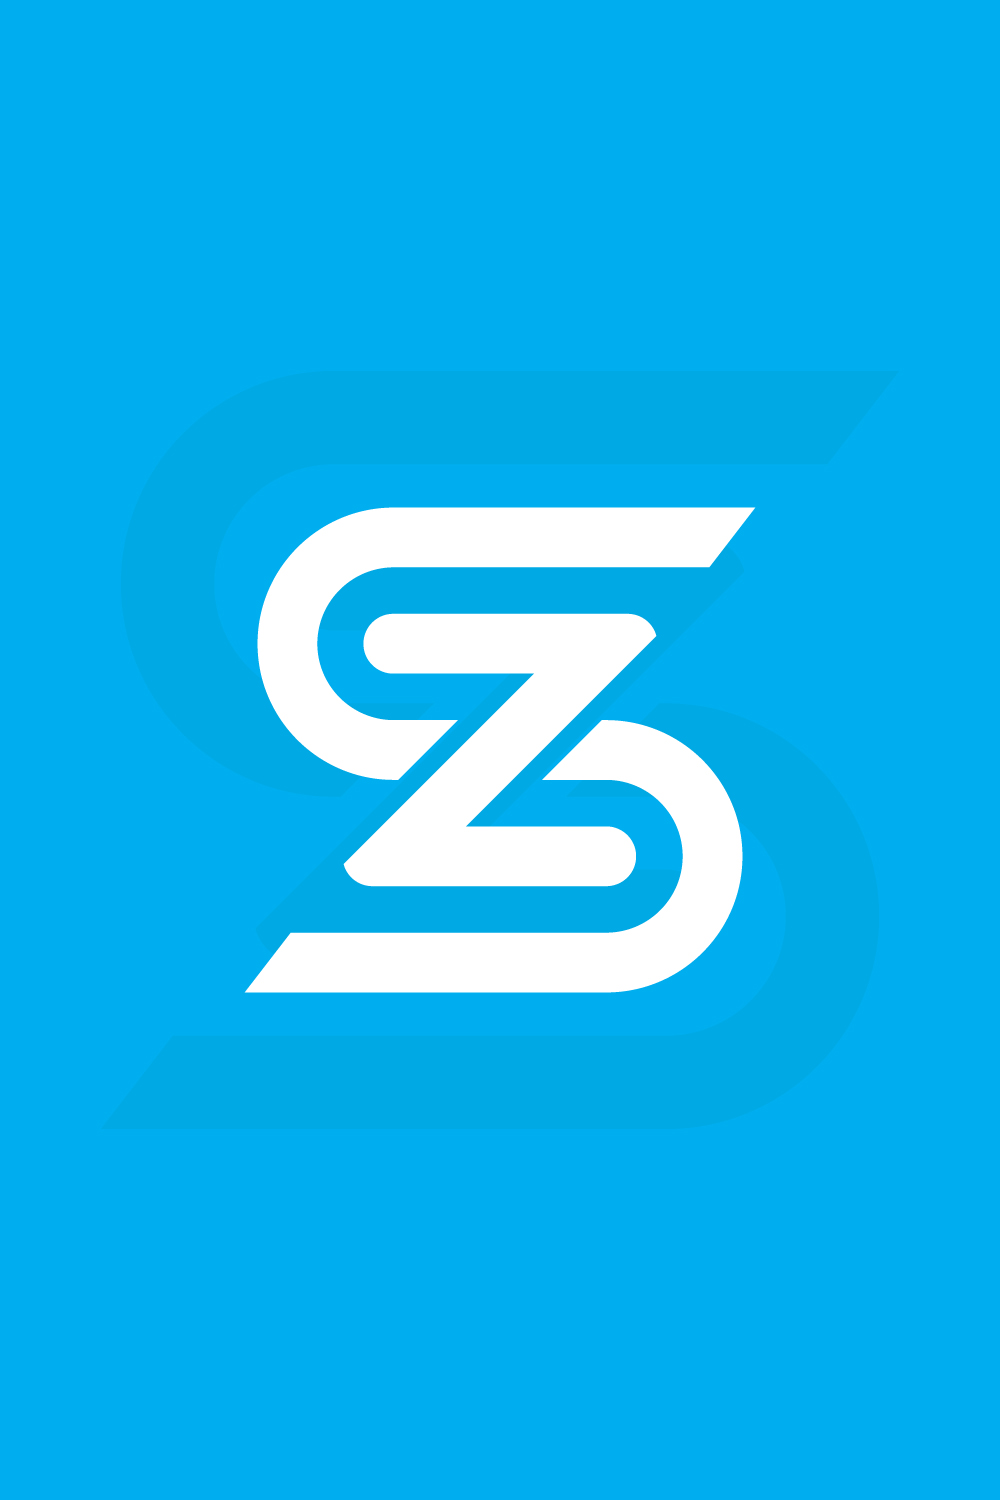 SZ Letter Mark Logo Design pinterest image.